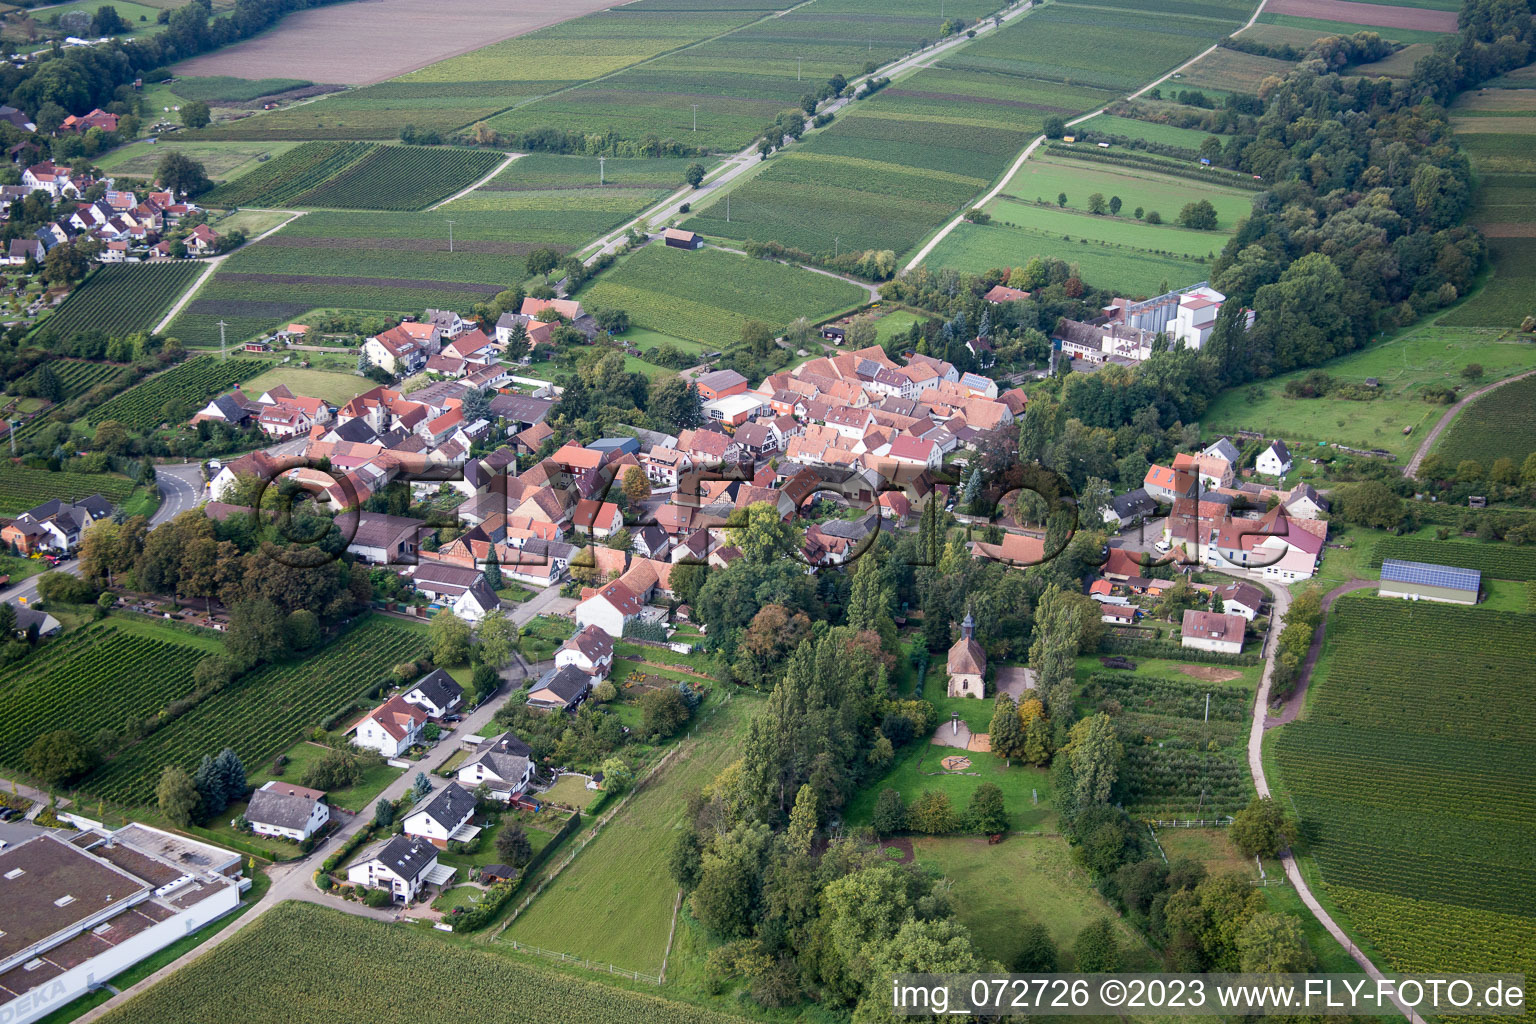 Quartier Appenhofen in Billigheim-Ingenheim dans le département Rhénanie-Palatinat, Allemagne vue d'en haut